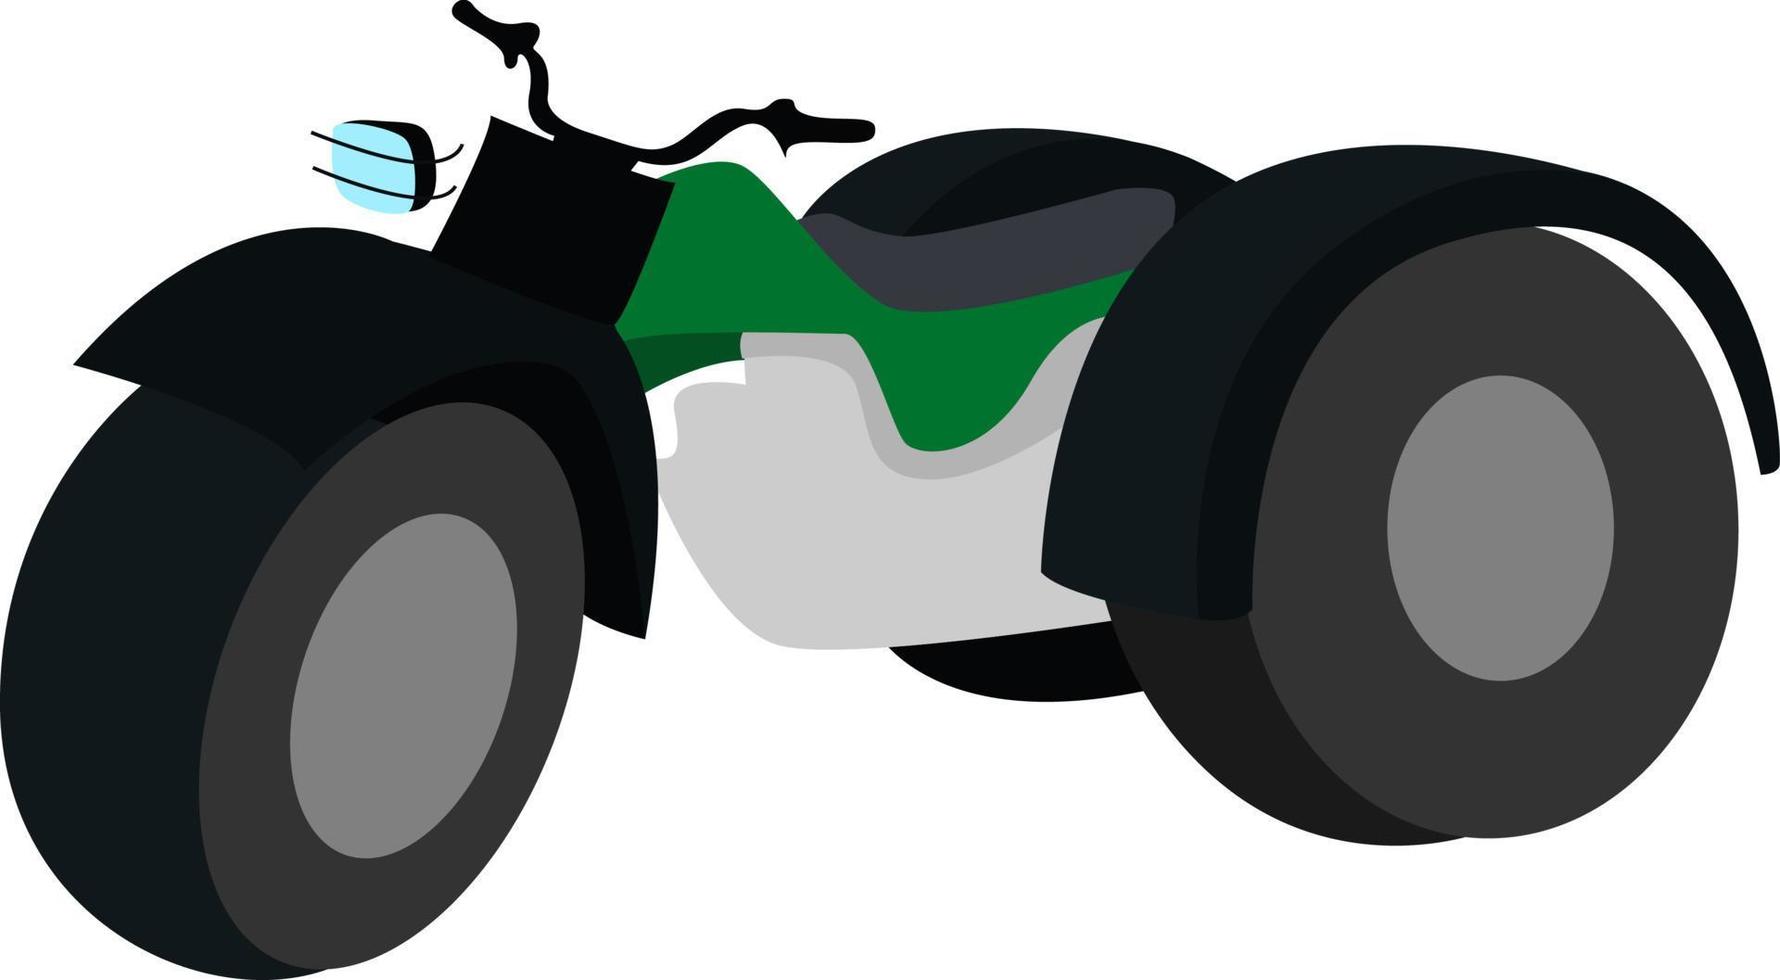 Vehículo de terreno verde, ilustración, vector sobre fondo blanco.